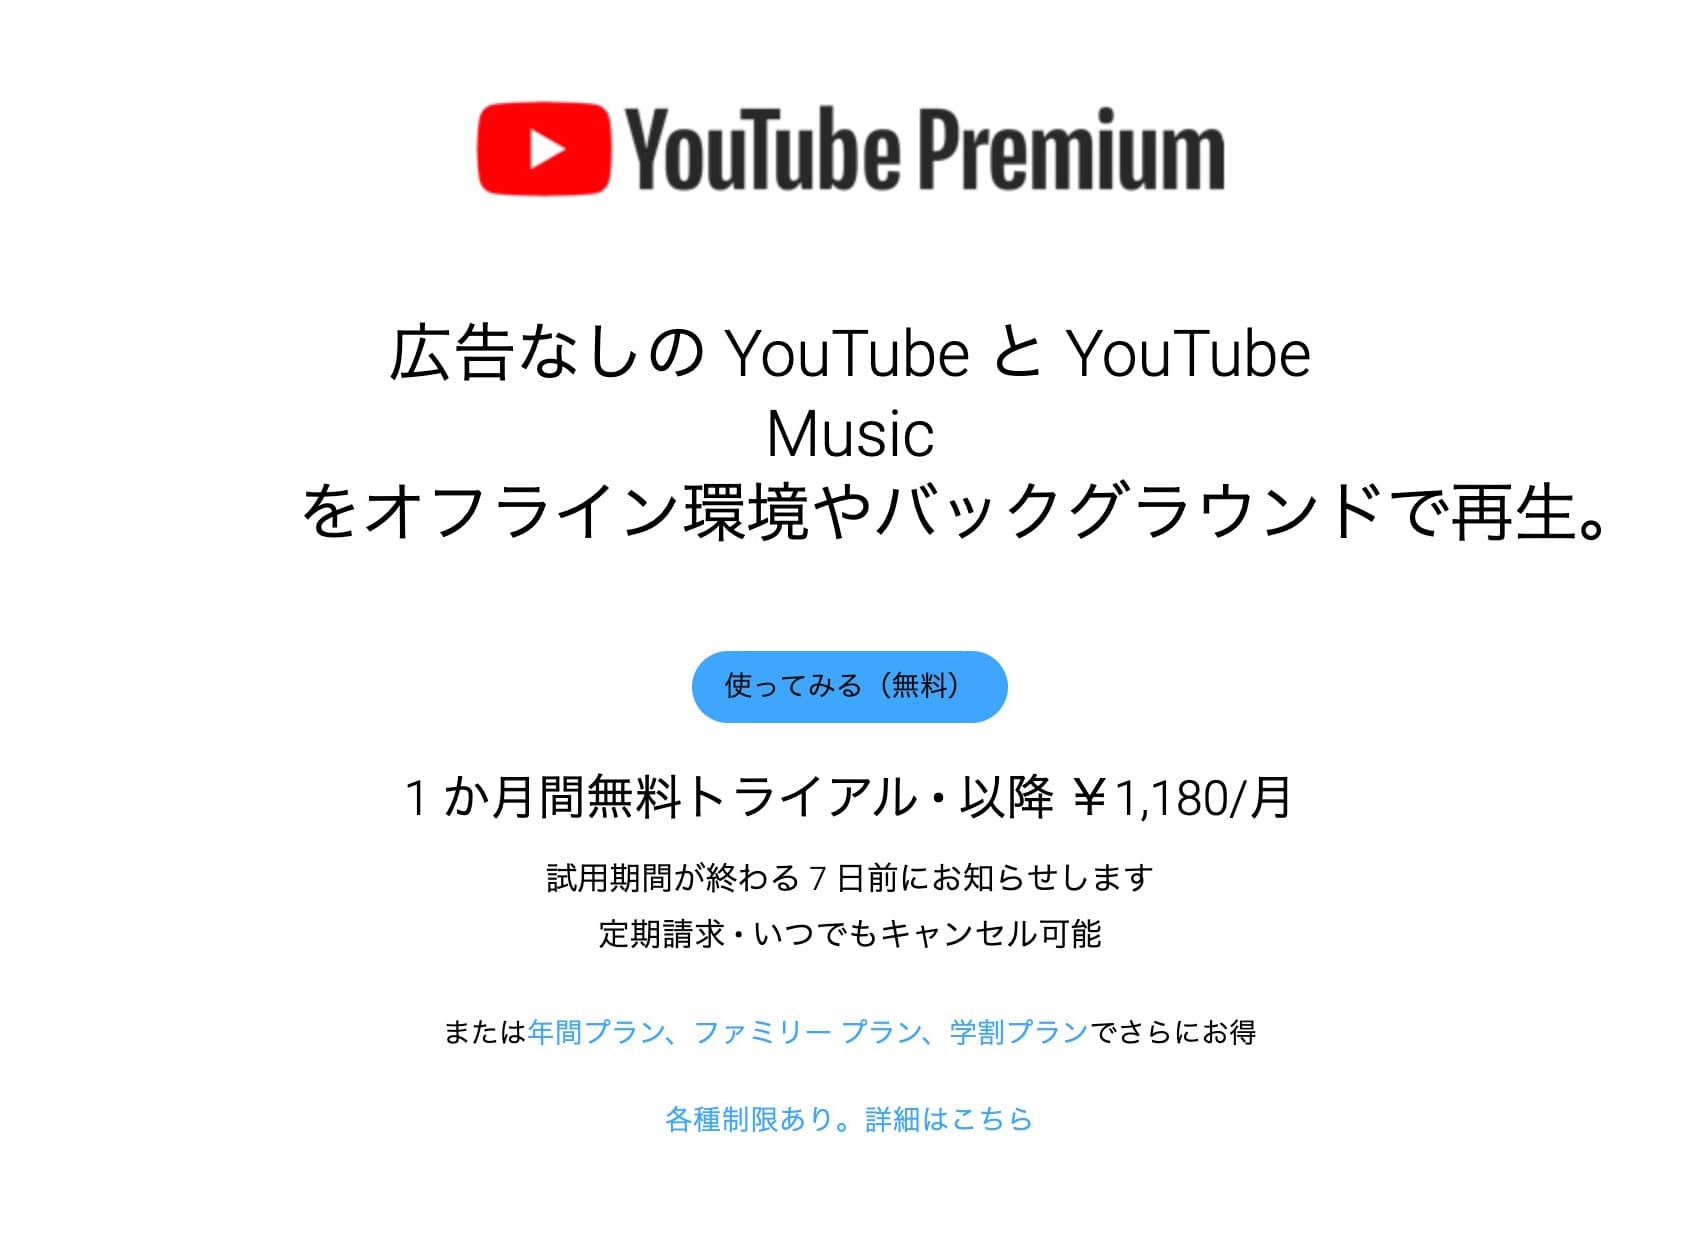 ①：YouTubeプレミアムに加入する【有料】